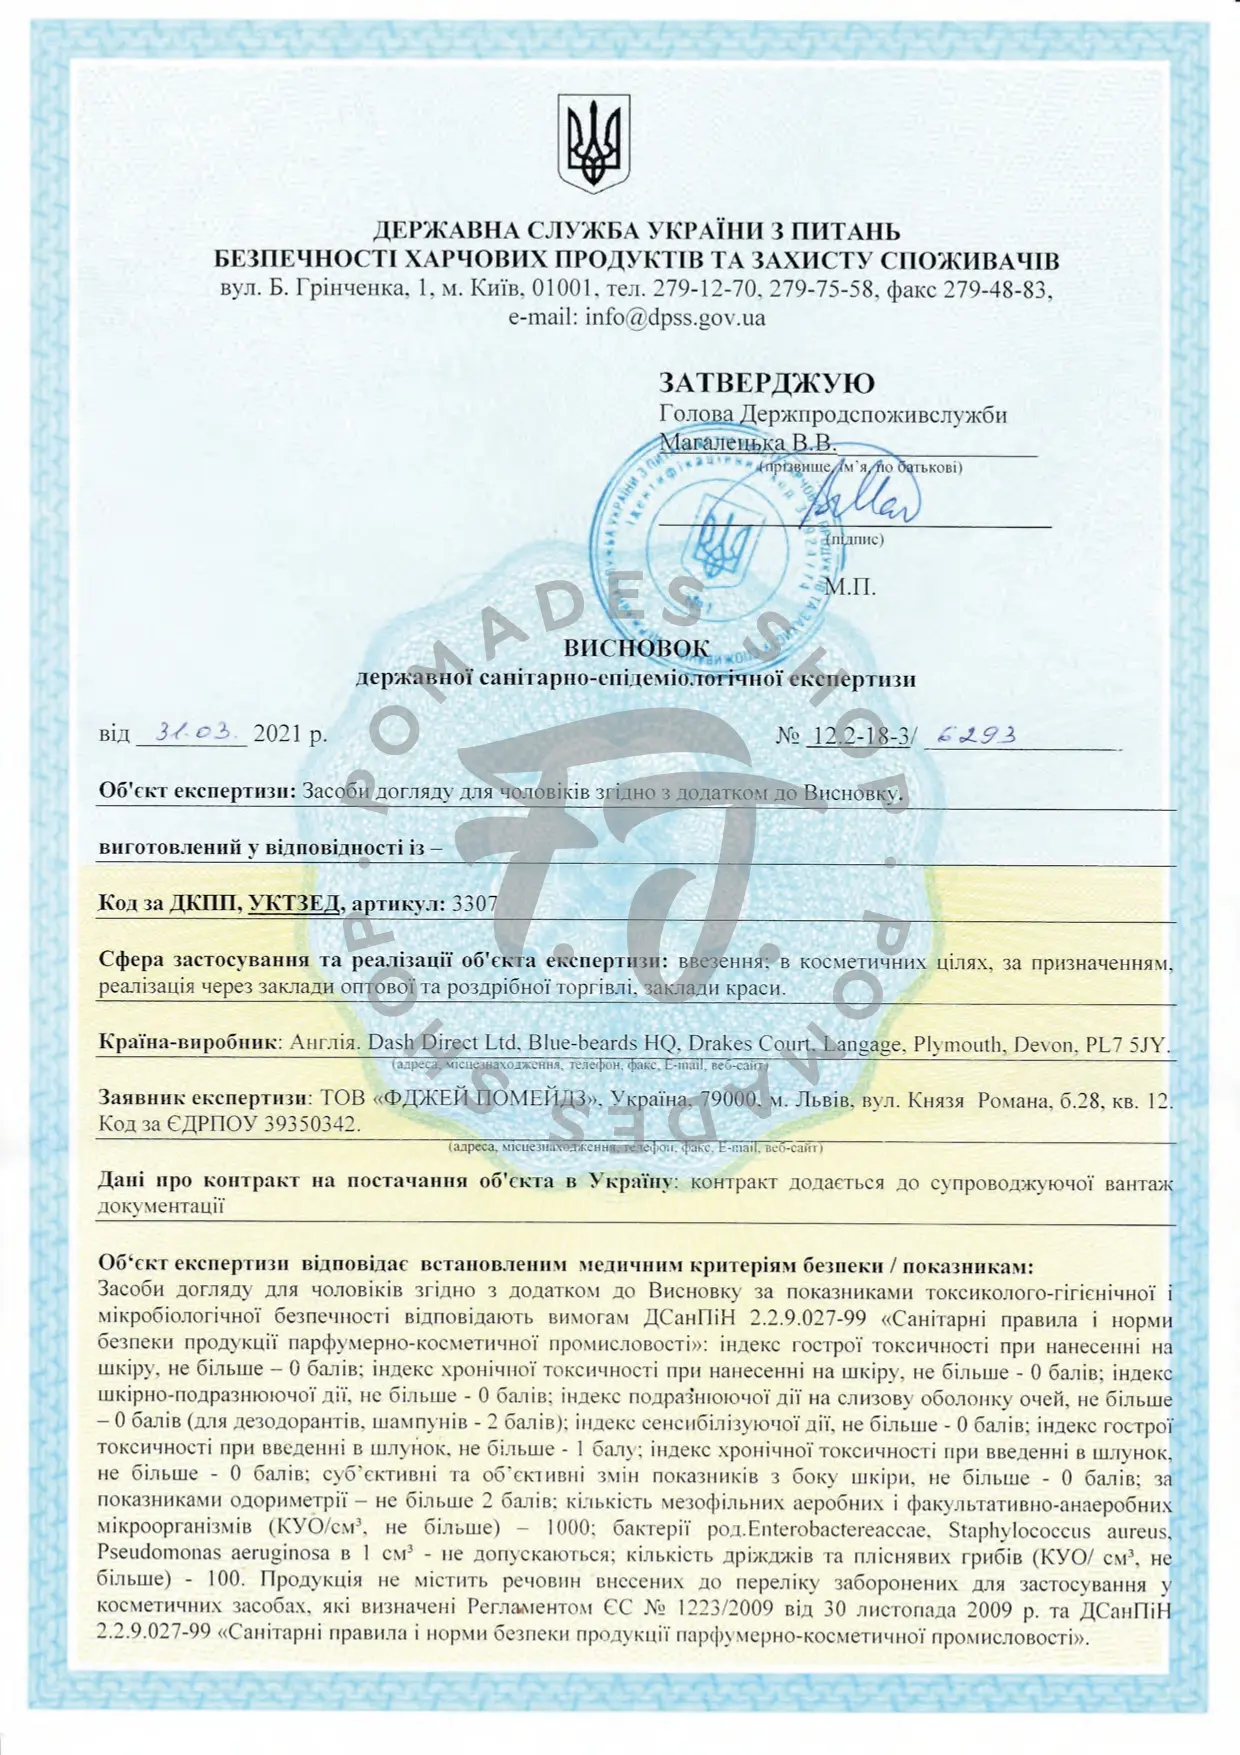 Сертифікат відповідності до державних санітарно-епідемічних стандартів косметичних засобів догляду для чоловіків